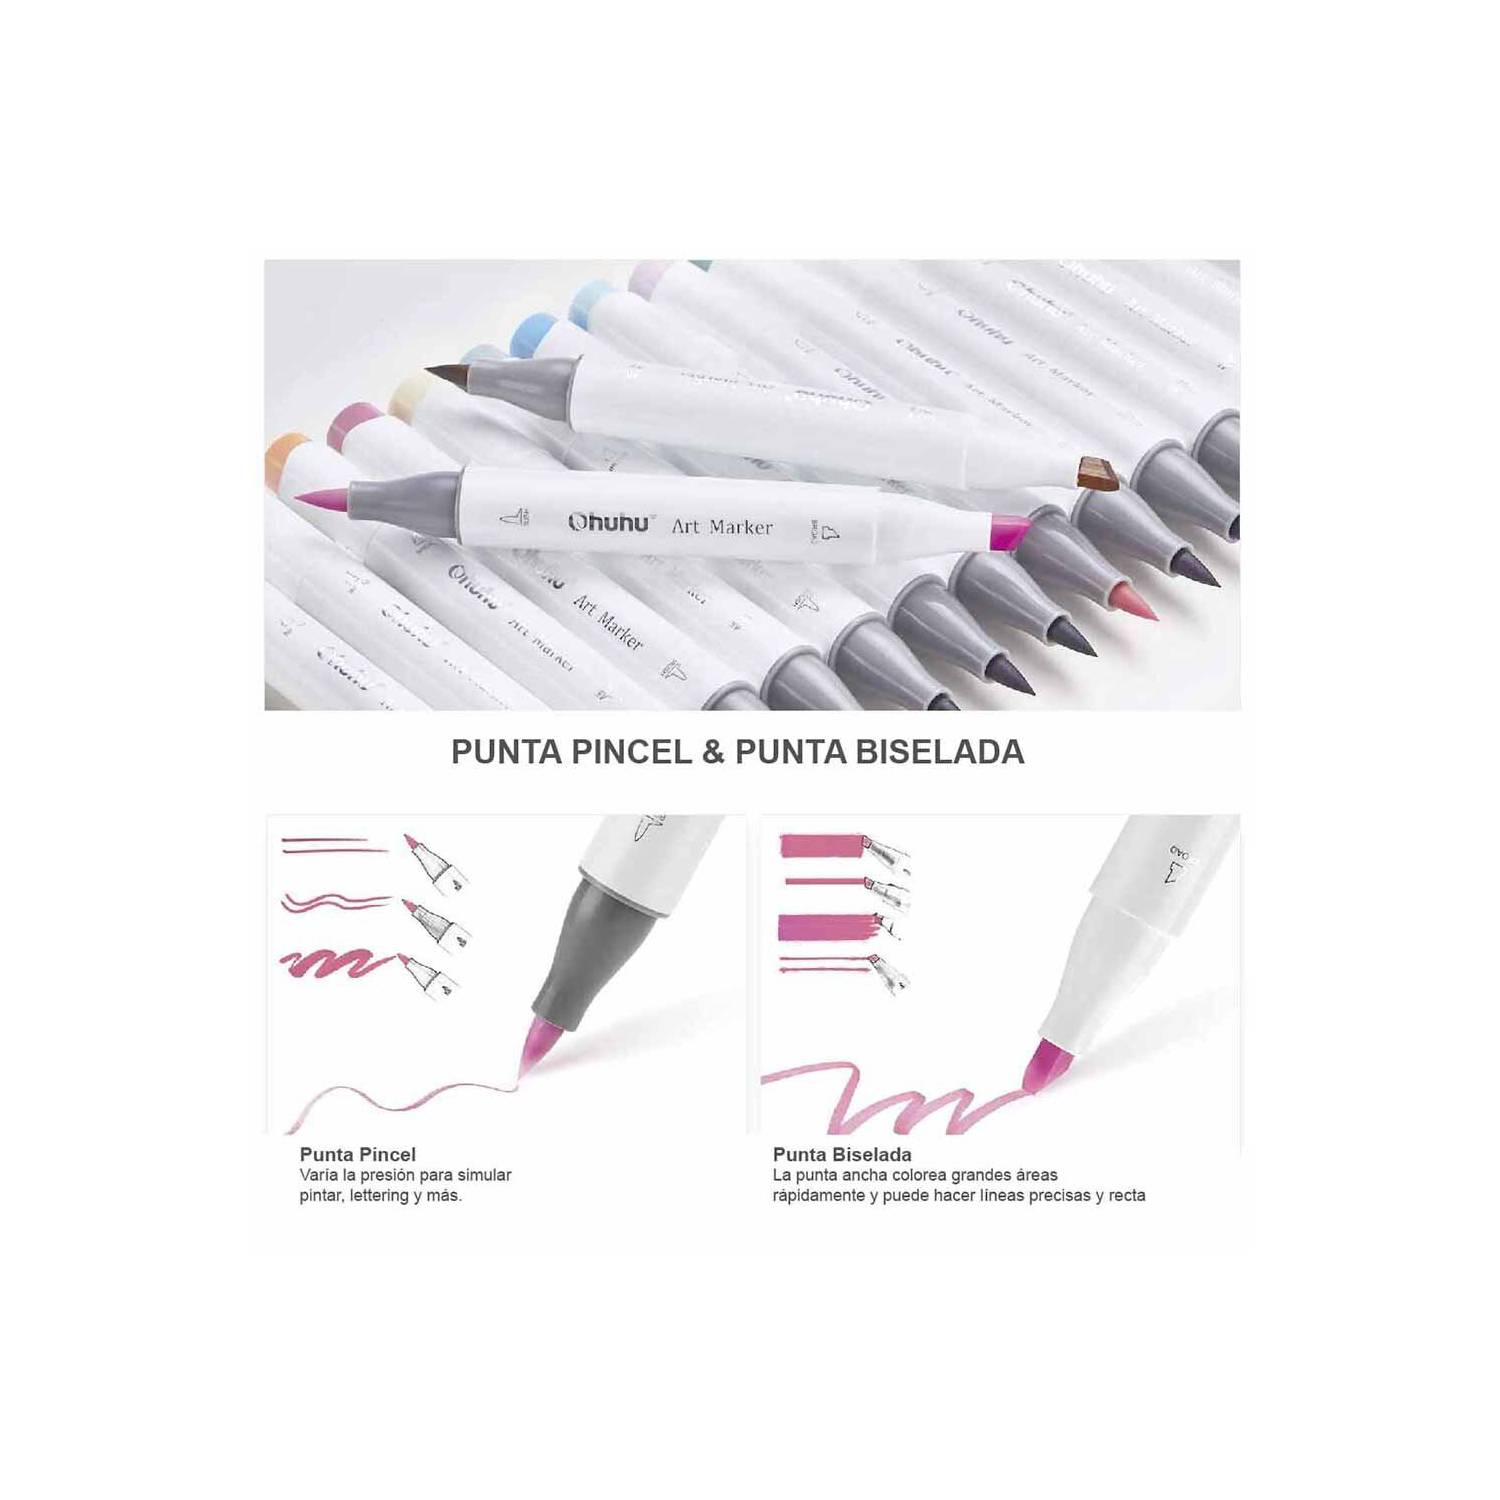 PaperStop - Llegaron los marcadores #ohuhu 🤩!! Son marcadores de alcohol  con doble punta: una punta pincel y otra biselada💜. Su tinta es de alta  calidad y los colores pueden mezclarse entre